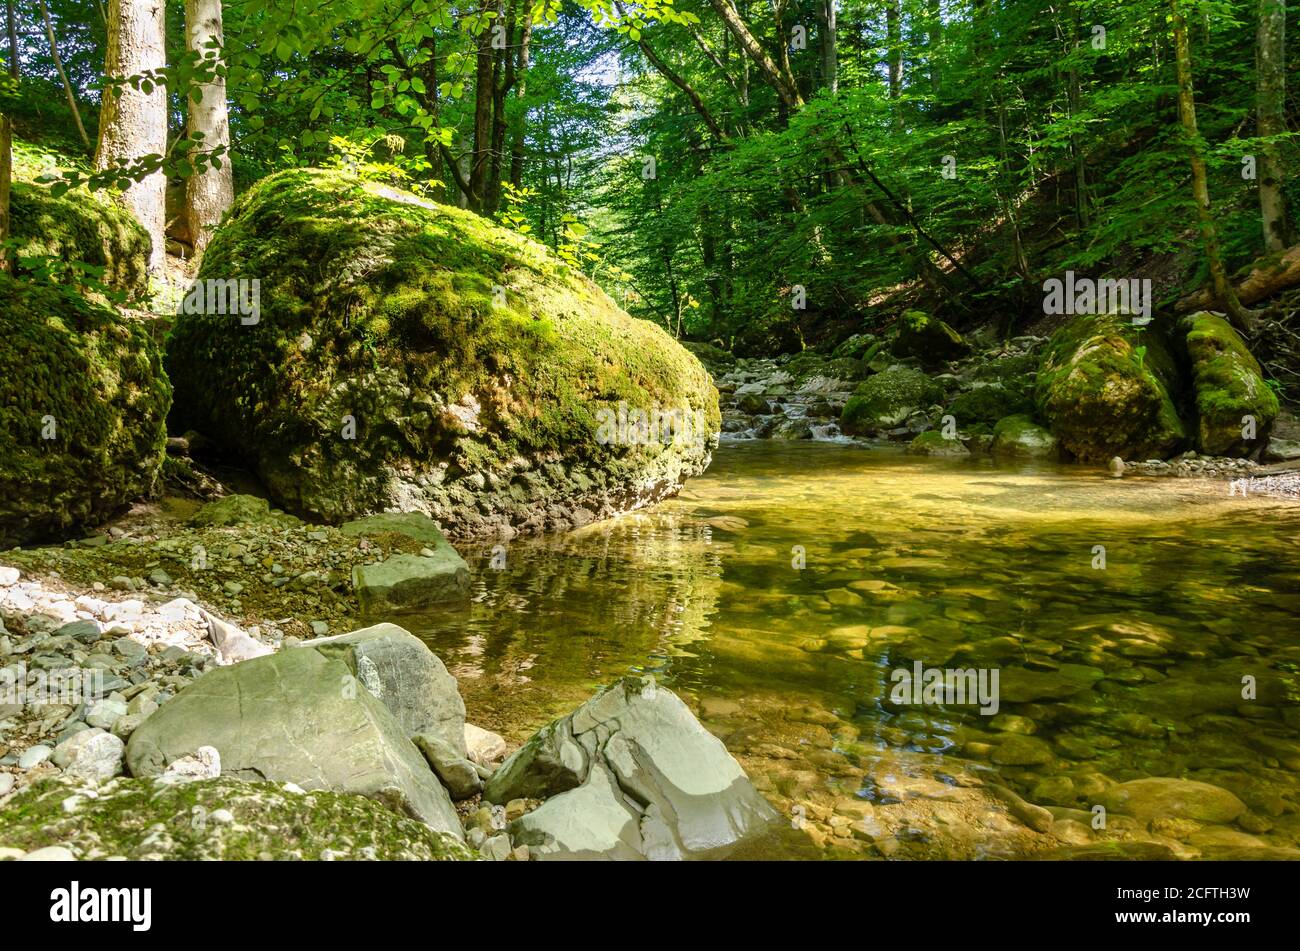 Grande roche, surcultivée avec de la mousse verte, à côté d'une crique tranquille dans une forêt ensoleillée. Grande pierre au bord d'un lit de ruisseau dans une forêt à feuilles caduques. Banque D'Images